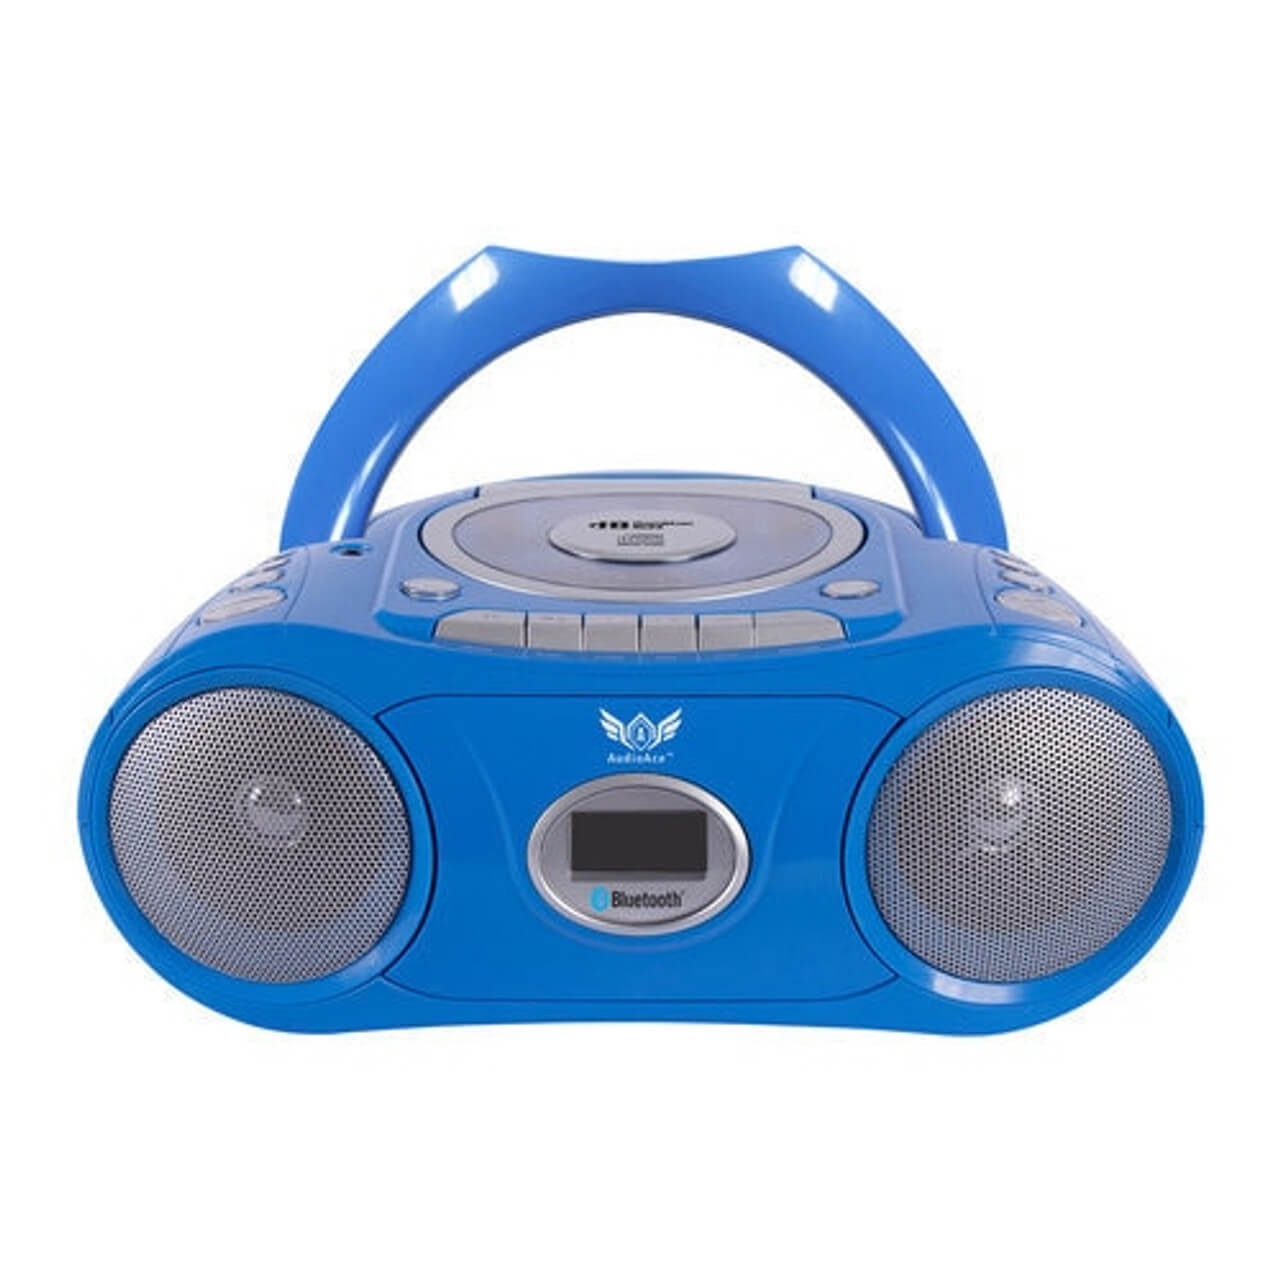 Centro de escucha de 6 estaciones con audífonos de lujo AudioAce Boombox, Jackbox y Smart-Trek con acentos azules